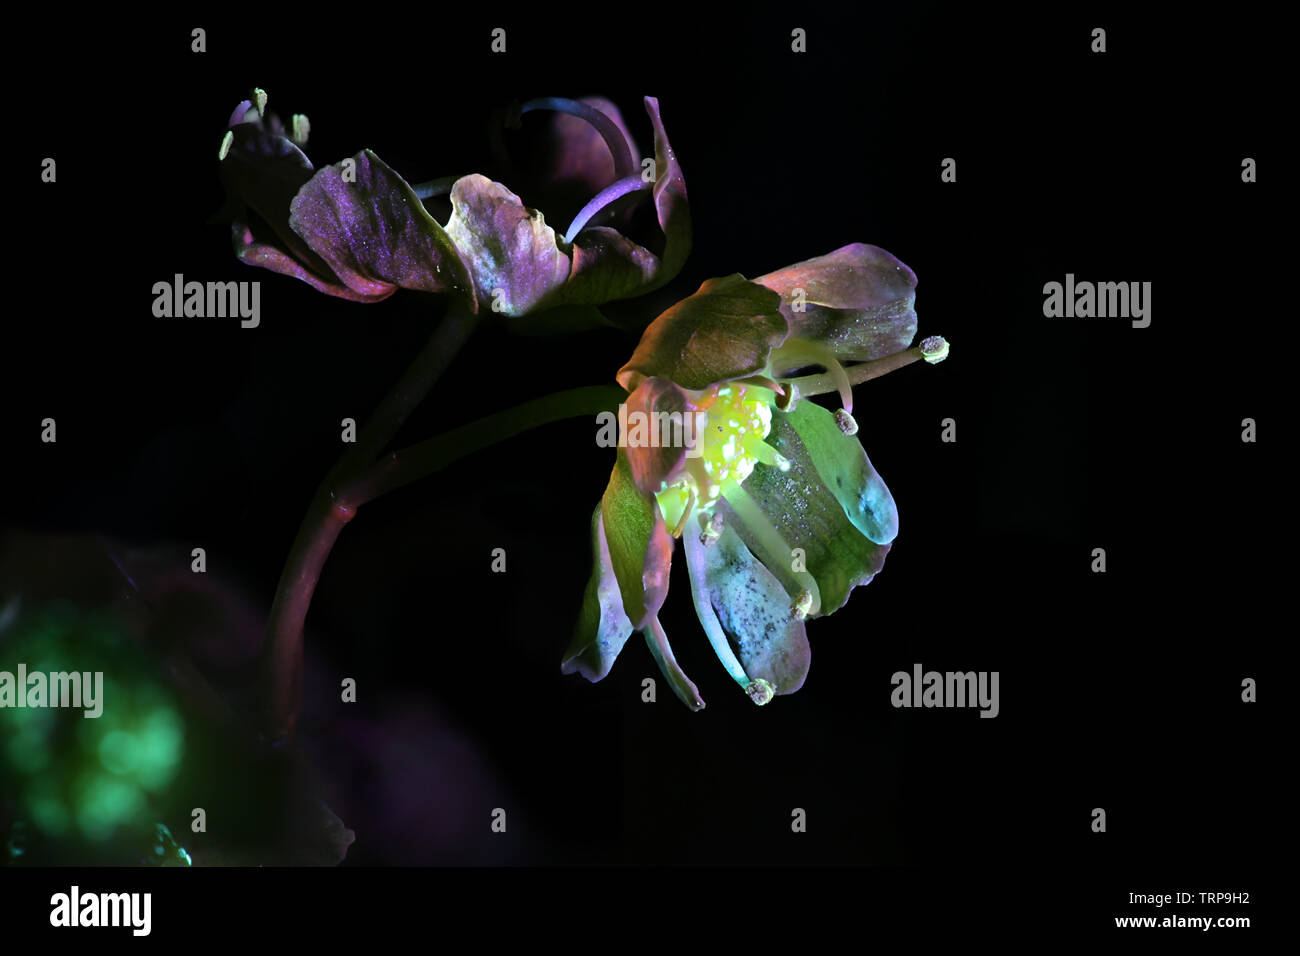 Fleurs de Norway maple, Acer platanoides, photographiée en lumière ultraviolette (365 nm) Banque D'Images